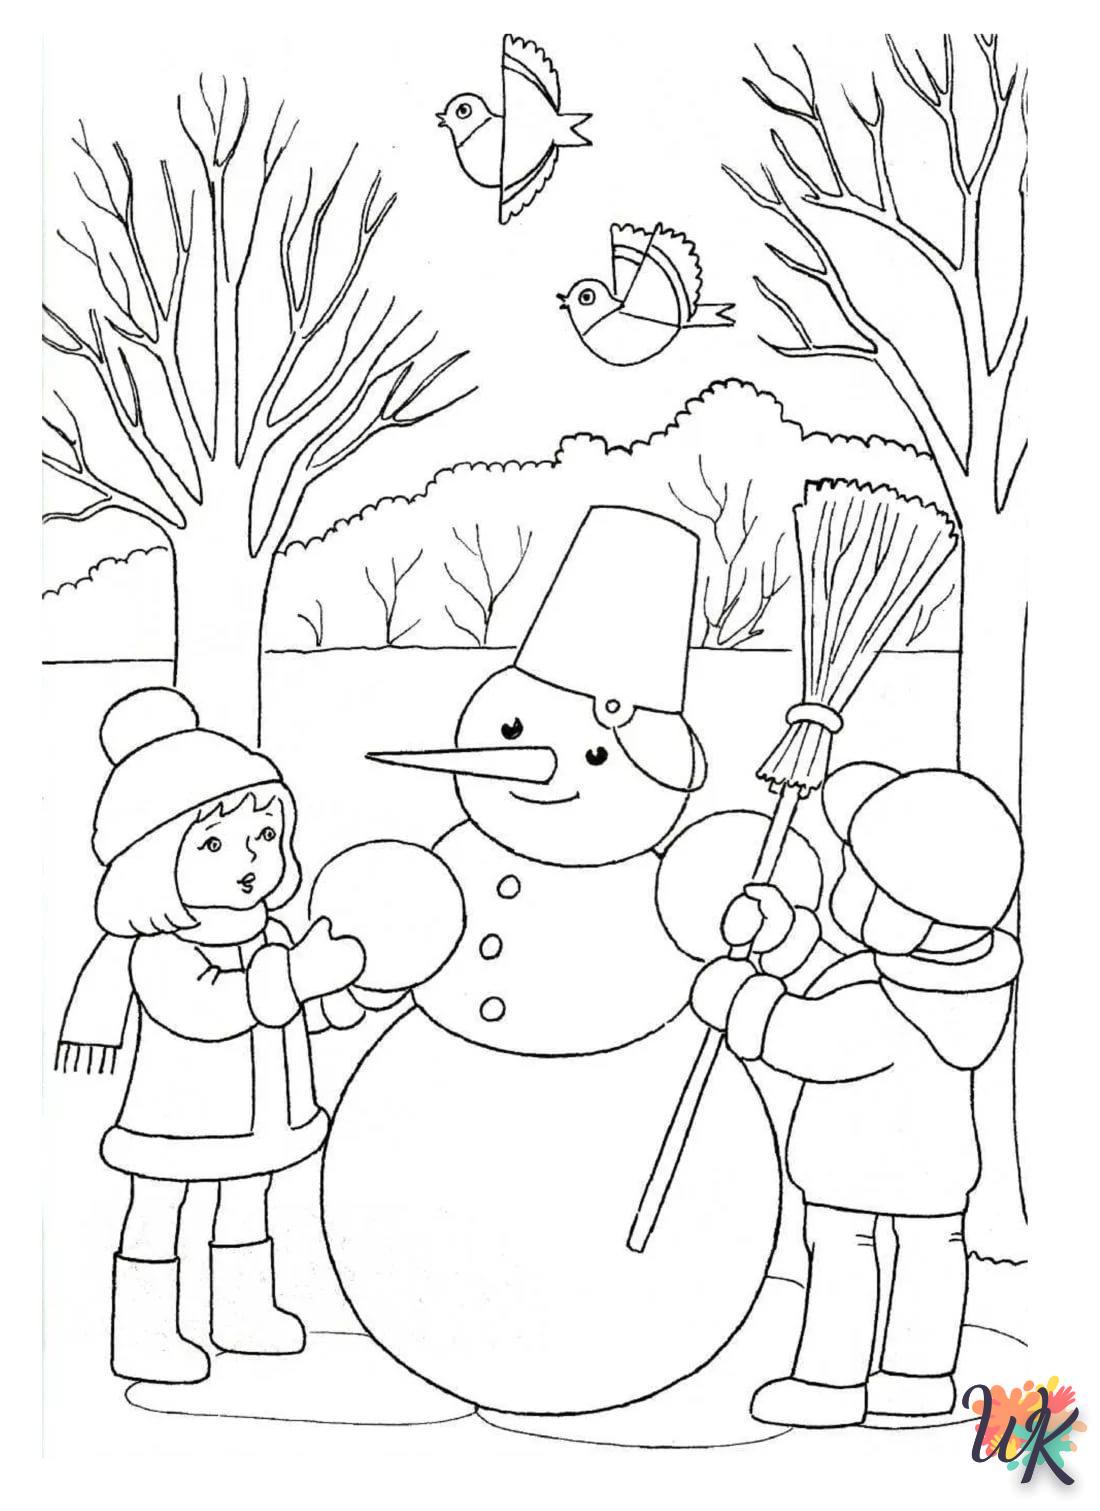 Dibujos para Colorear Muneco de nieve 86